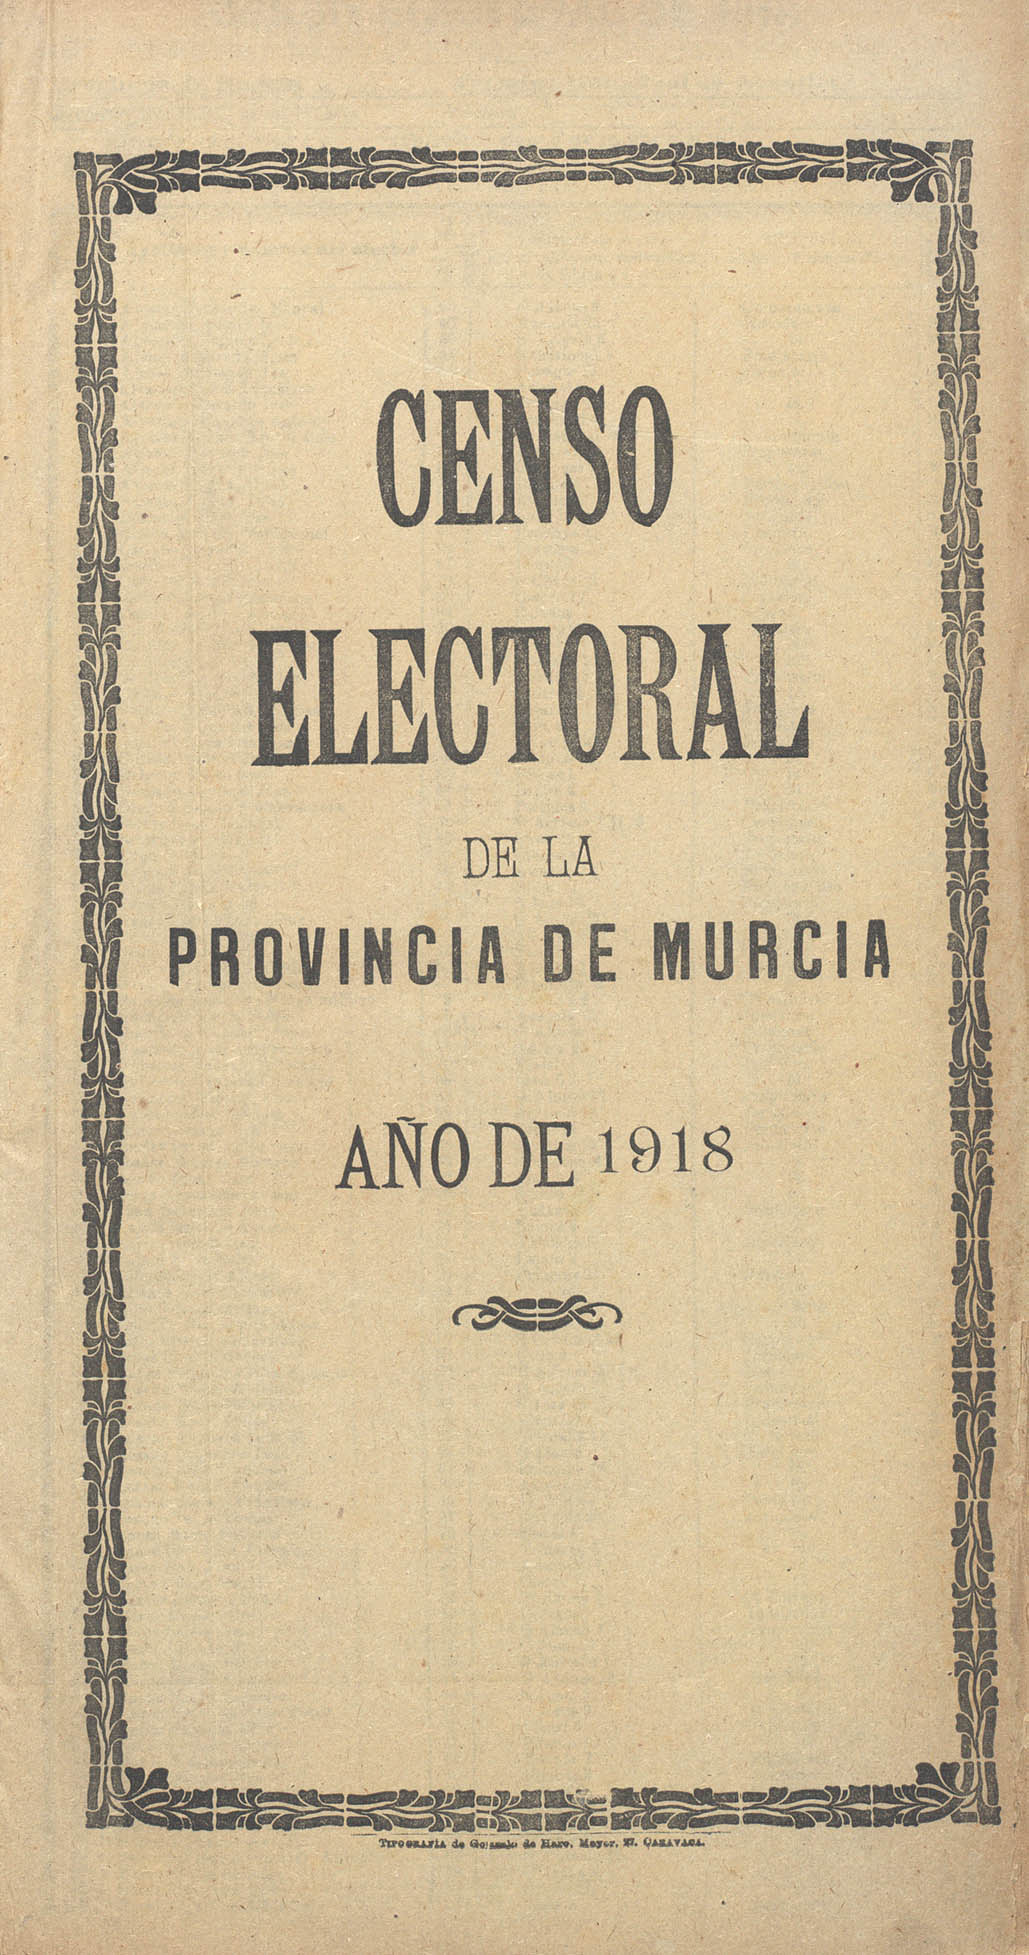 Censo electoral provincial de 1918